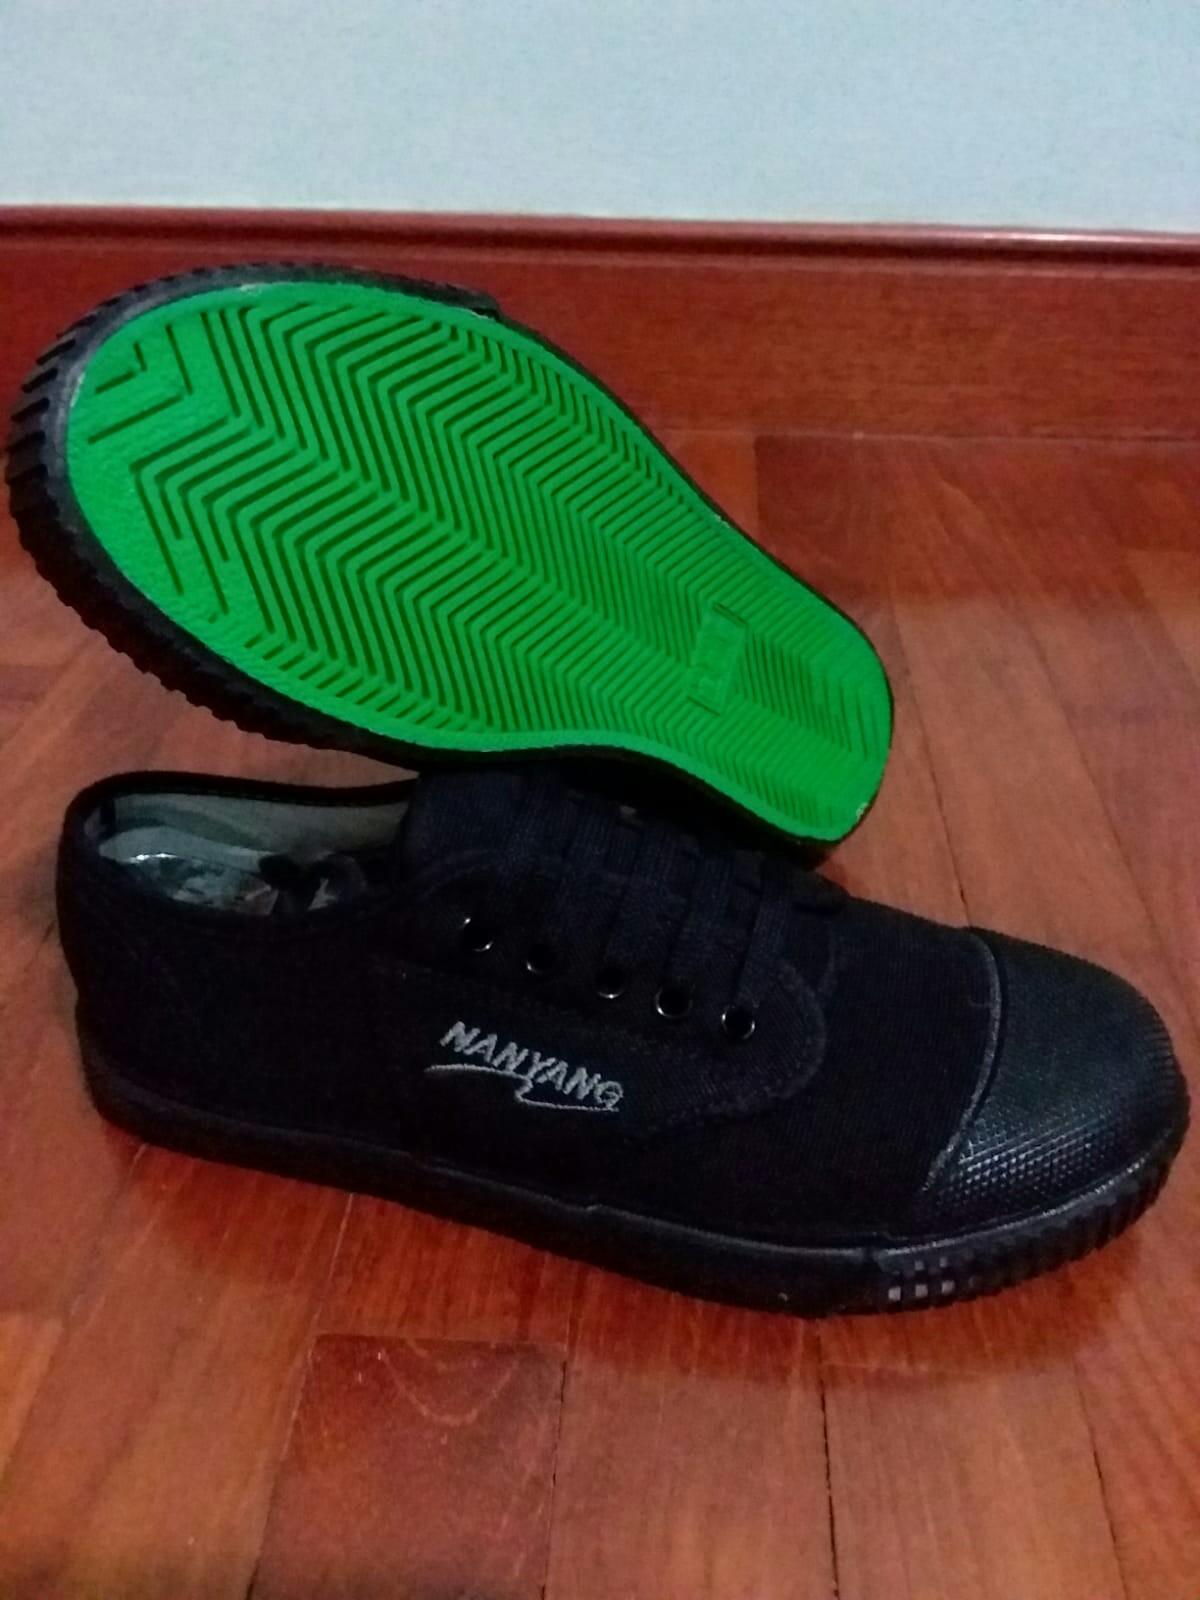 nanyang shoes black